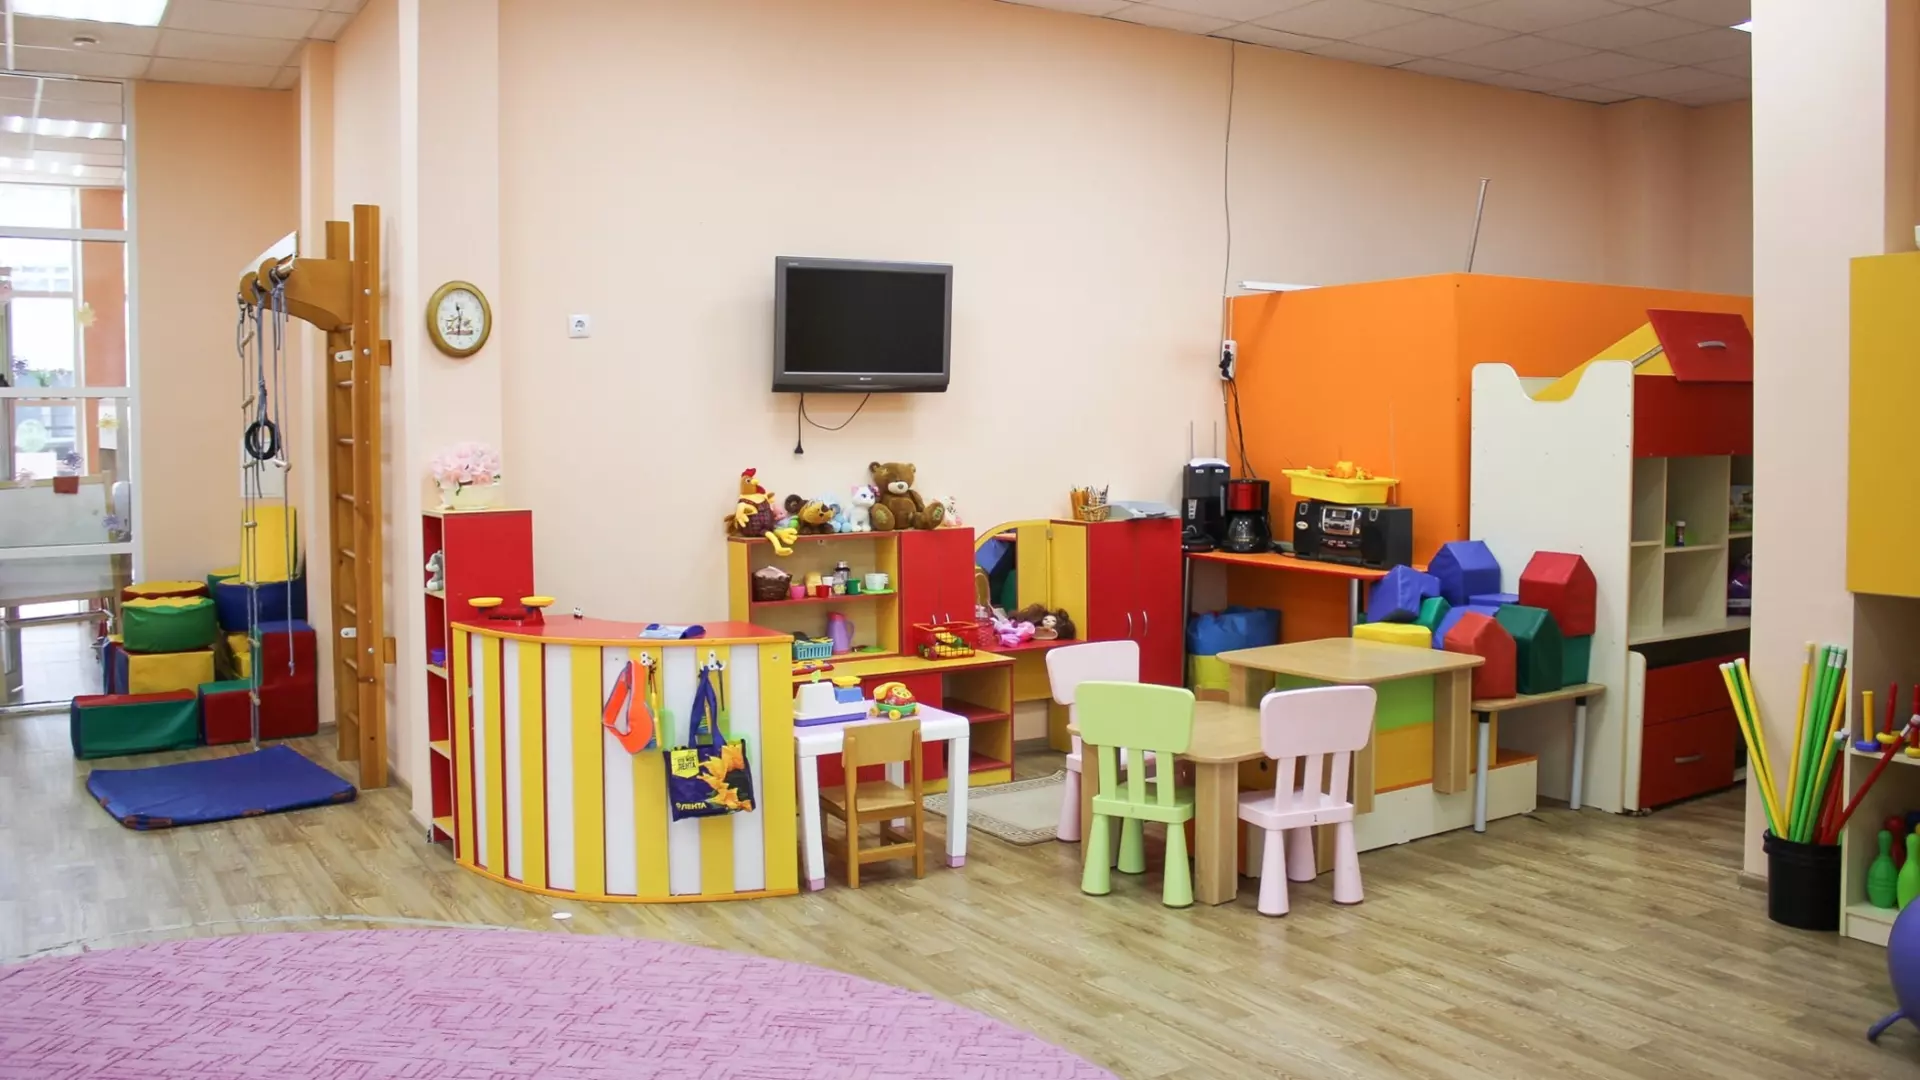 24 дошкольных учреждения построили в Нижнем Новгороде 